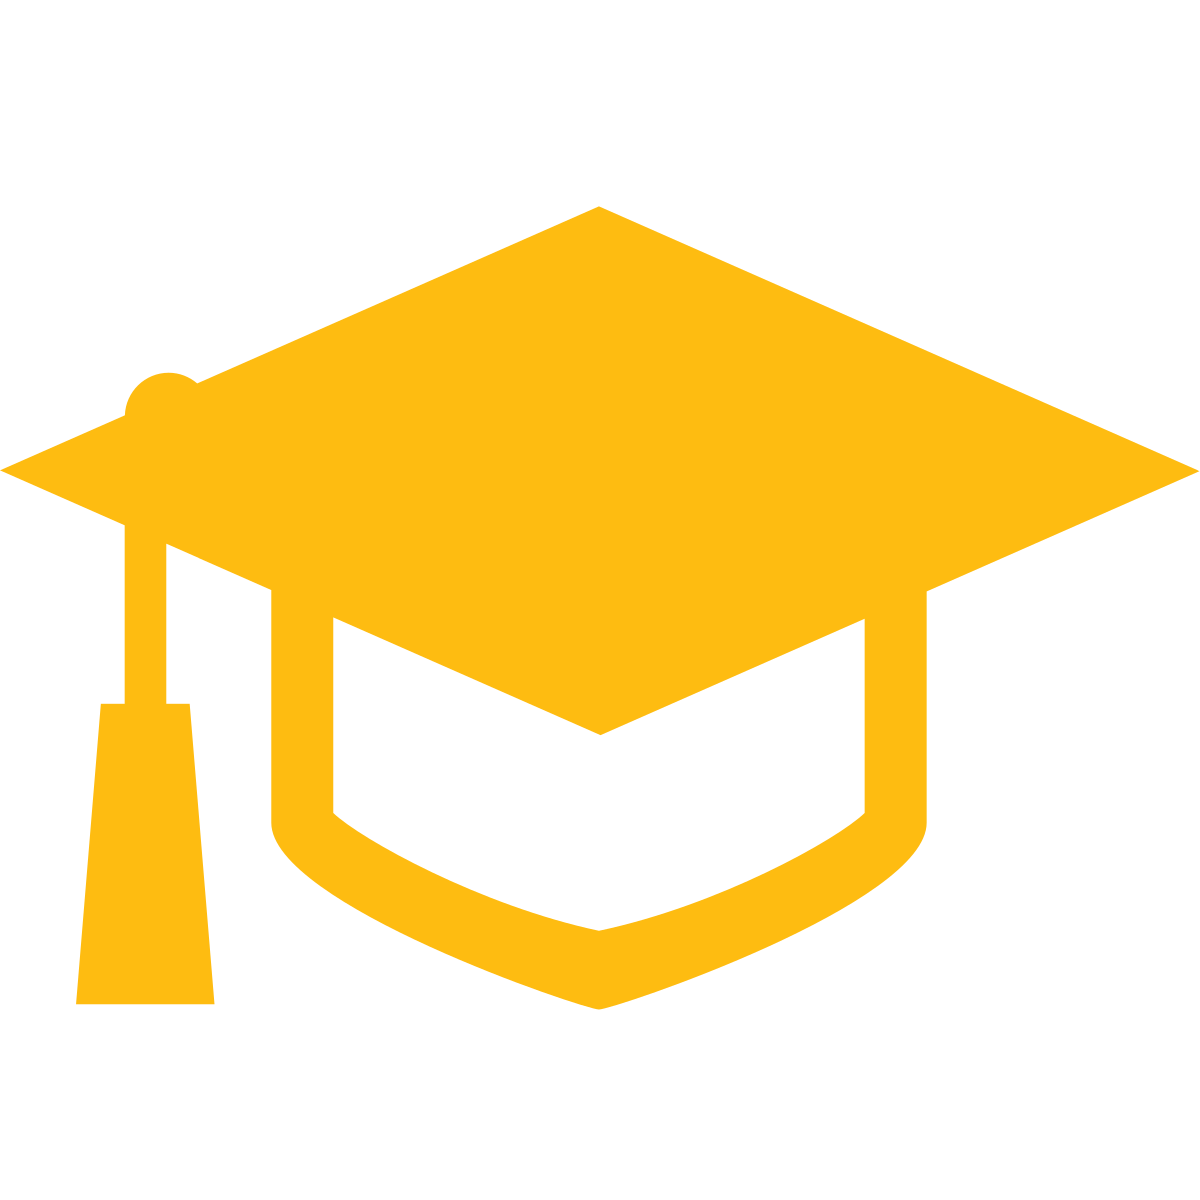 A graduate cap as an icon